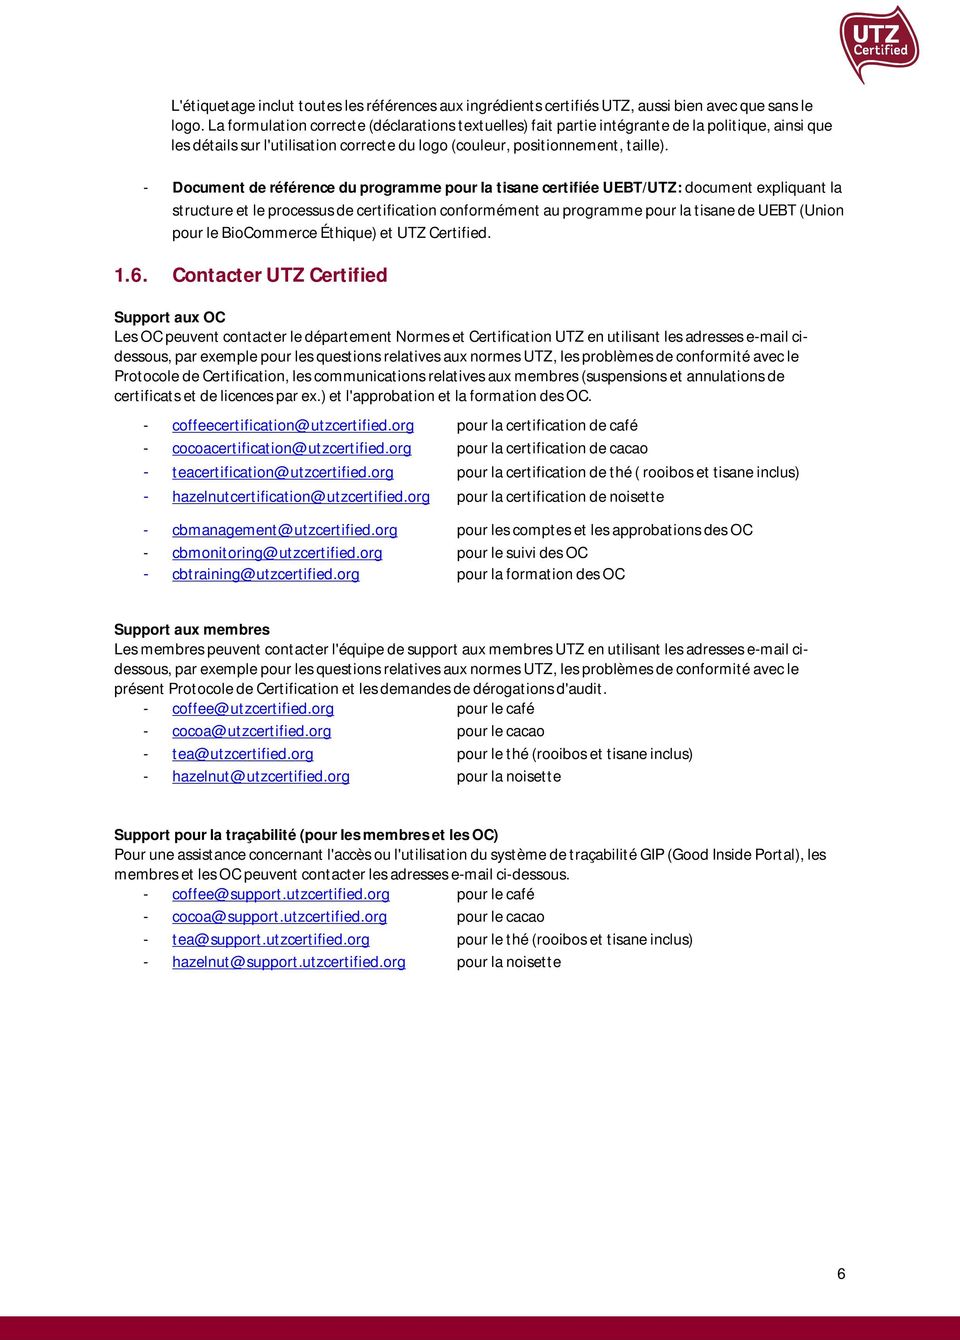 - Document de référence du programme pour la tisane certifiée UEBT/UTZ: document expliquant la structure et le processus de certification conformément au programme pour la tisane de UEBT (Union pour